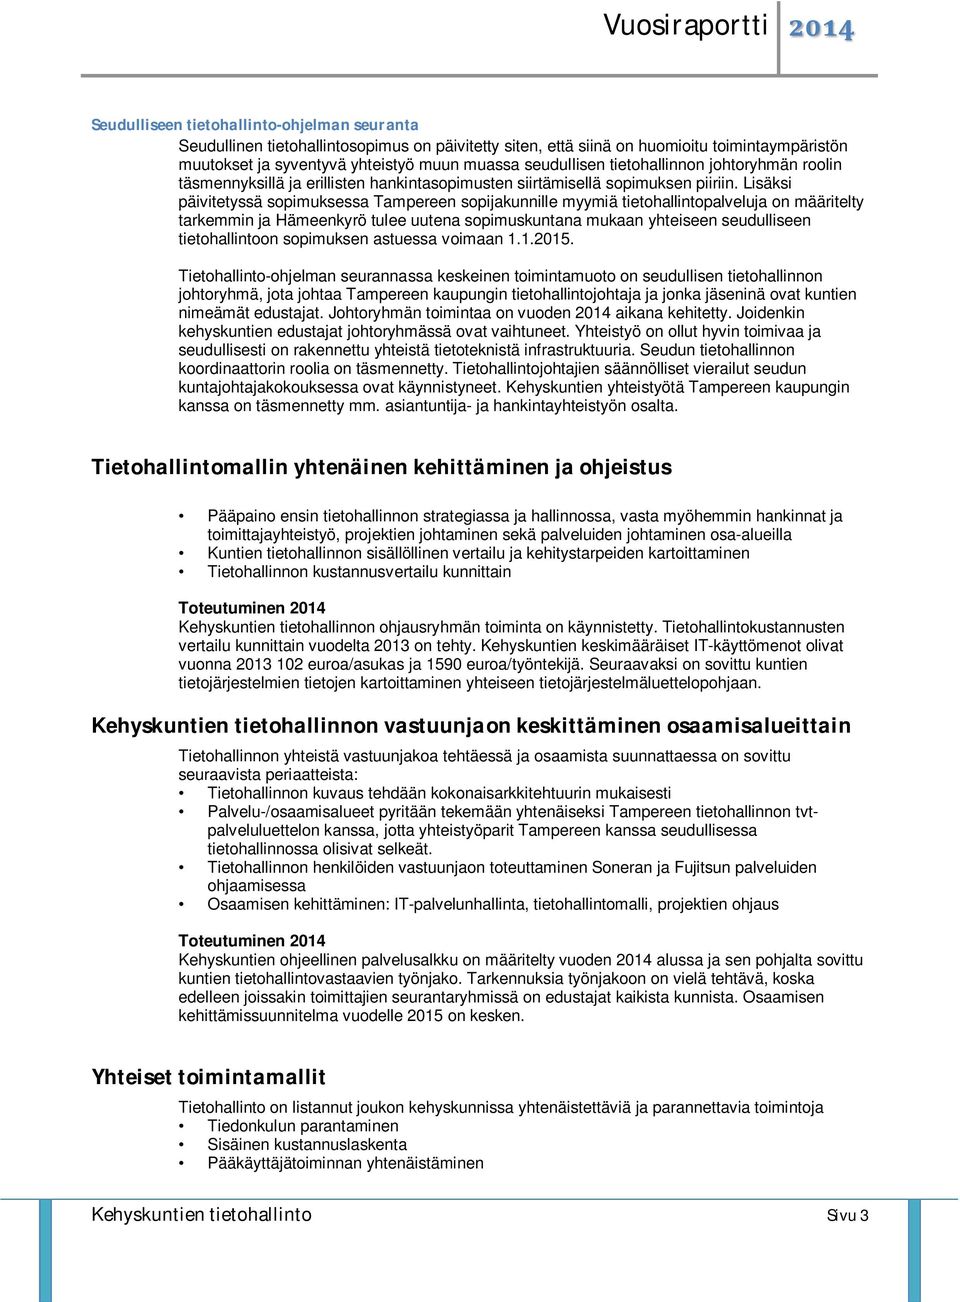 Lisäksi päivitetyssä sopimuksessa Tampereen sopijakunnille myymiä tietohallintopalveluja on määritelty tarkemmin ja Hämeenkyrö tulee uutena sopimuskuntana mukaan yhteiseen seudulliseen